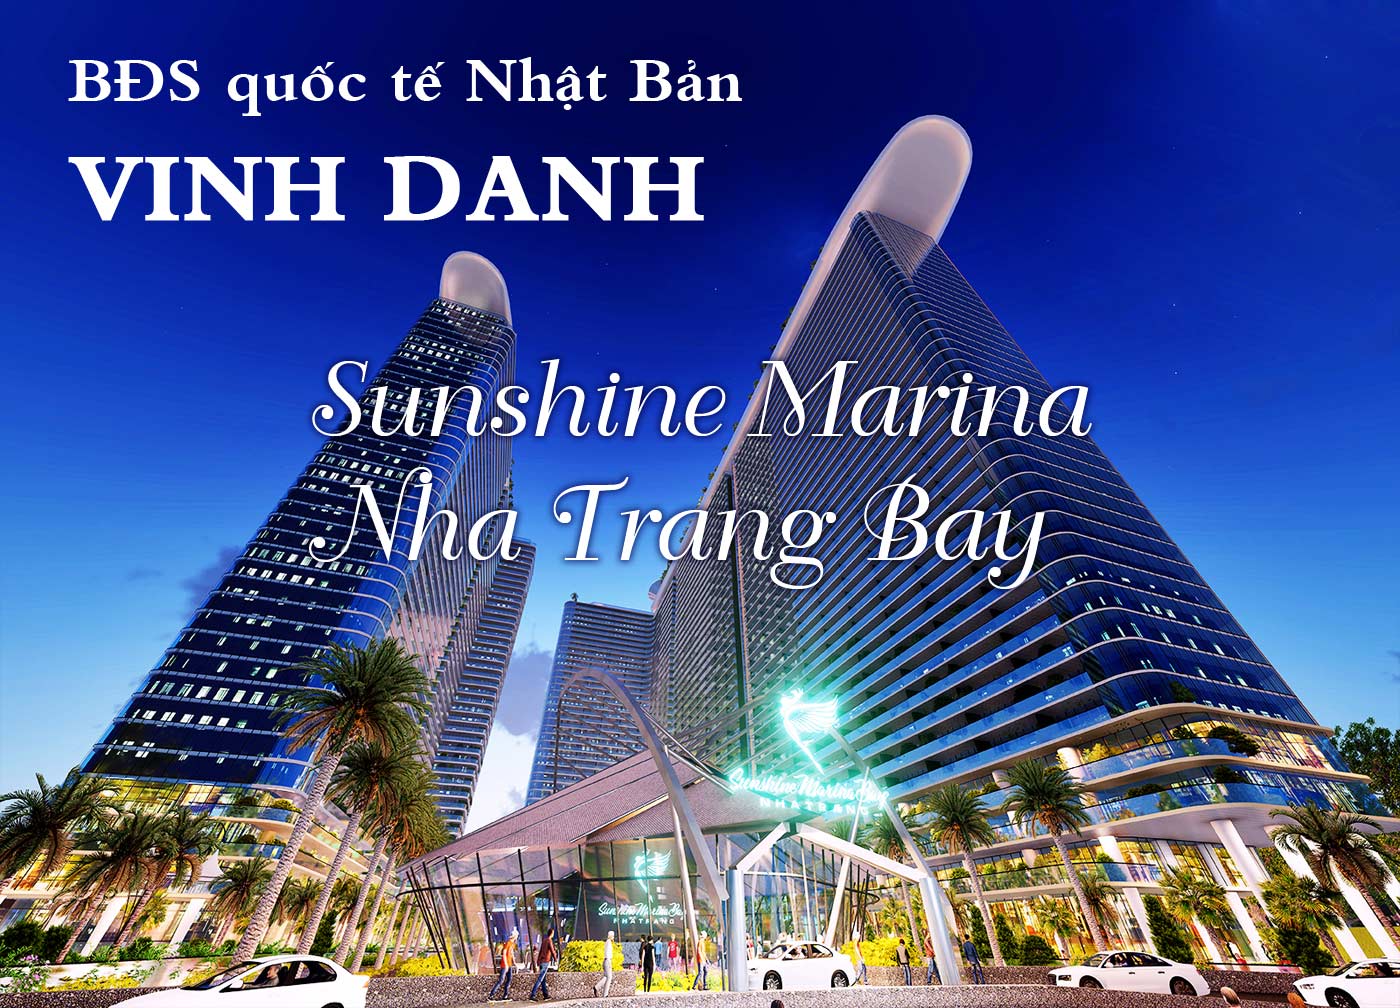 BĐS quốc tế Nhật Bản vinh danh Sunshine Marina Nha Trang Bay - Ảnh 1